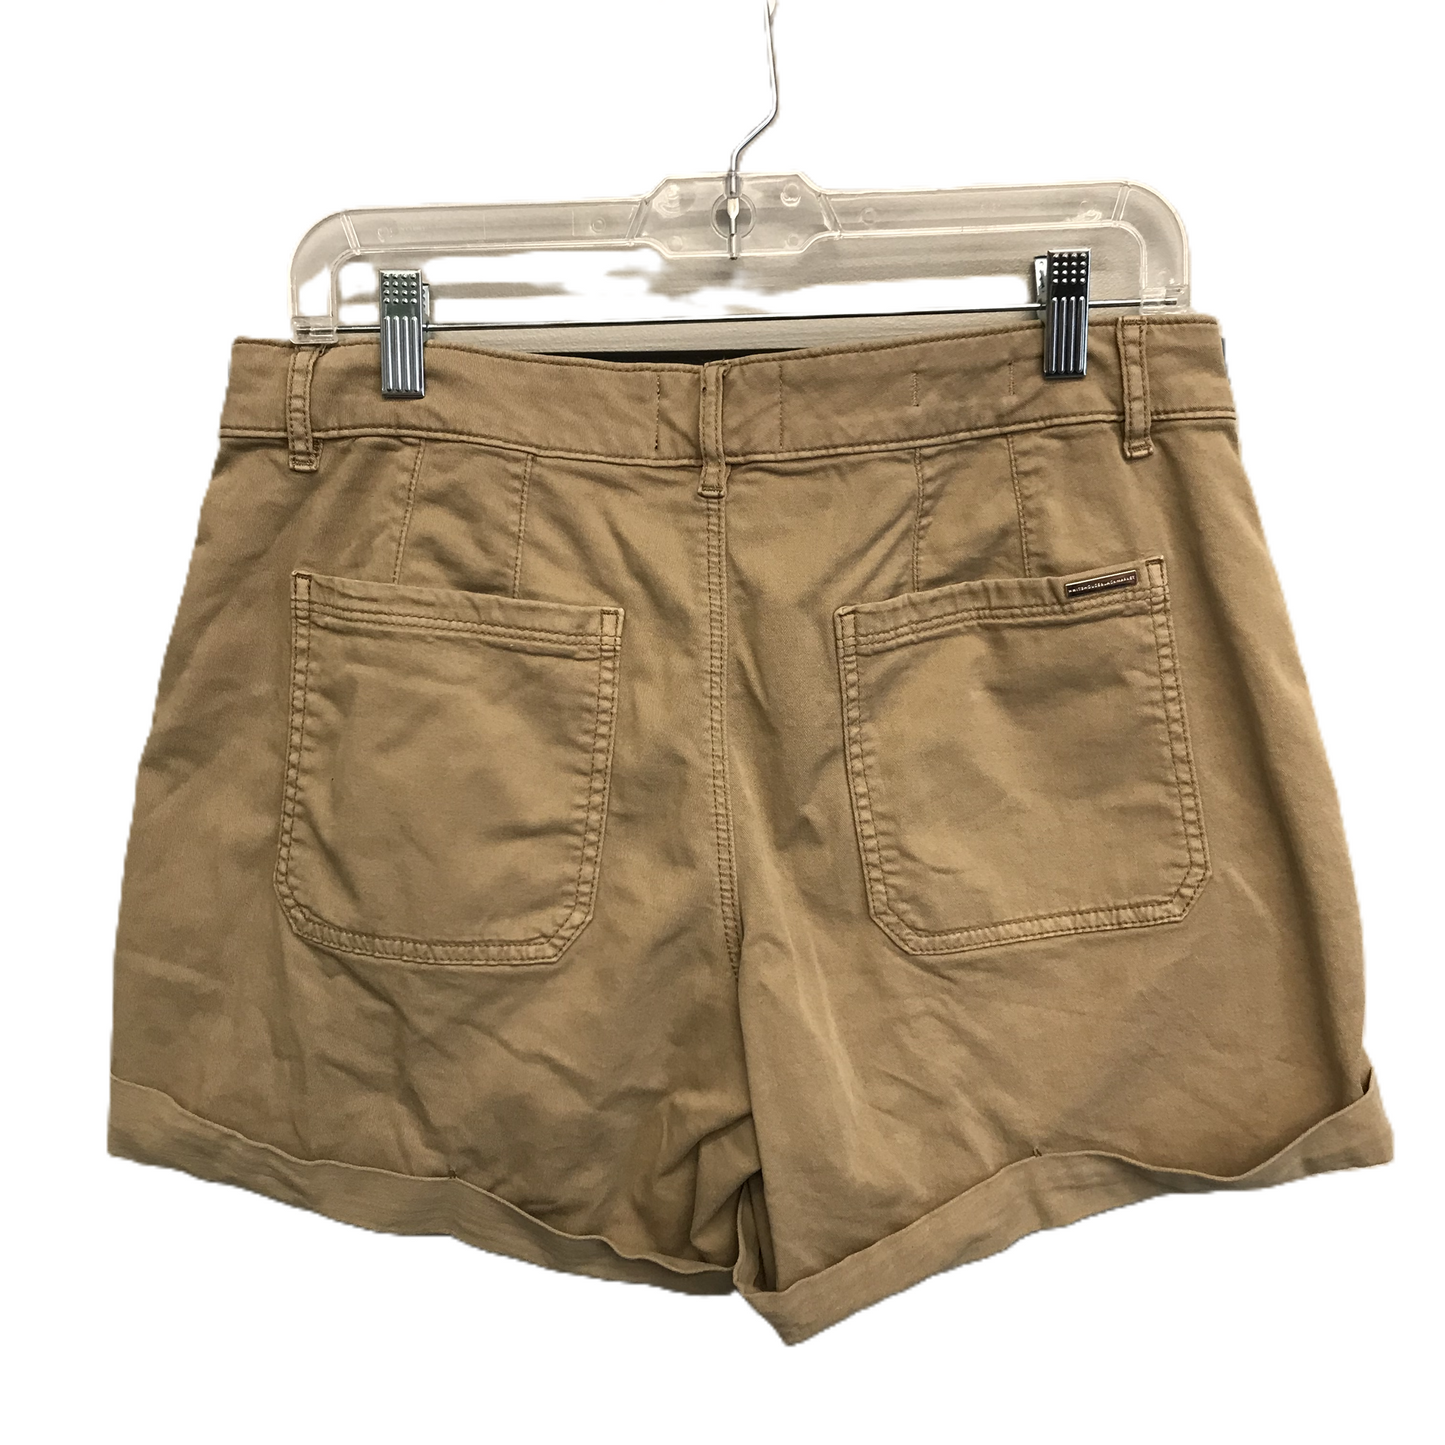 Tan Shorts By White House Black Market, Size: 8